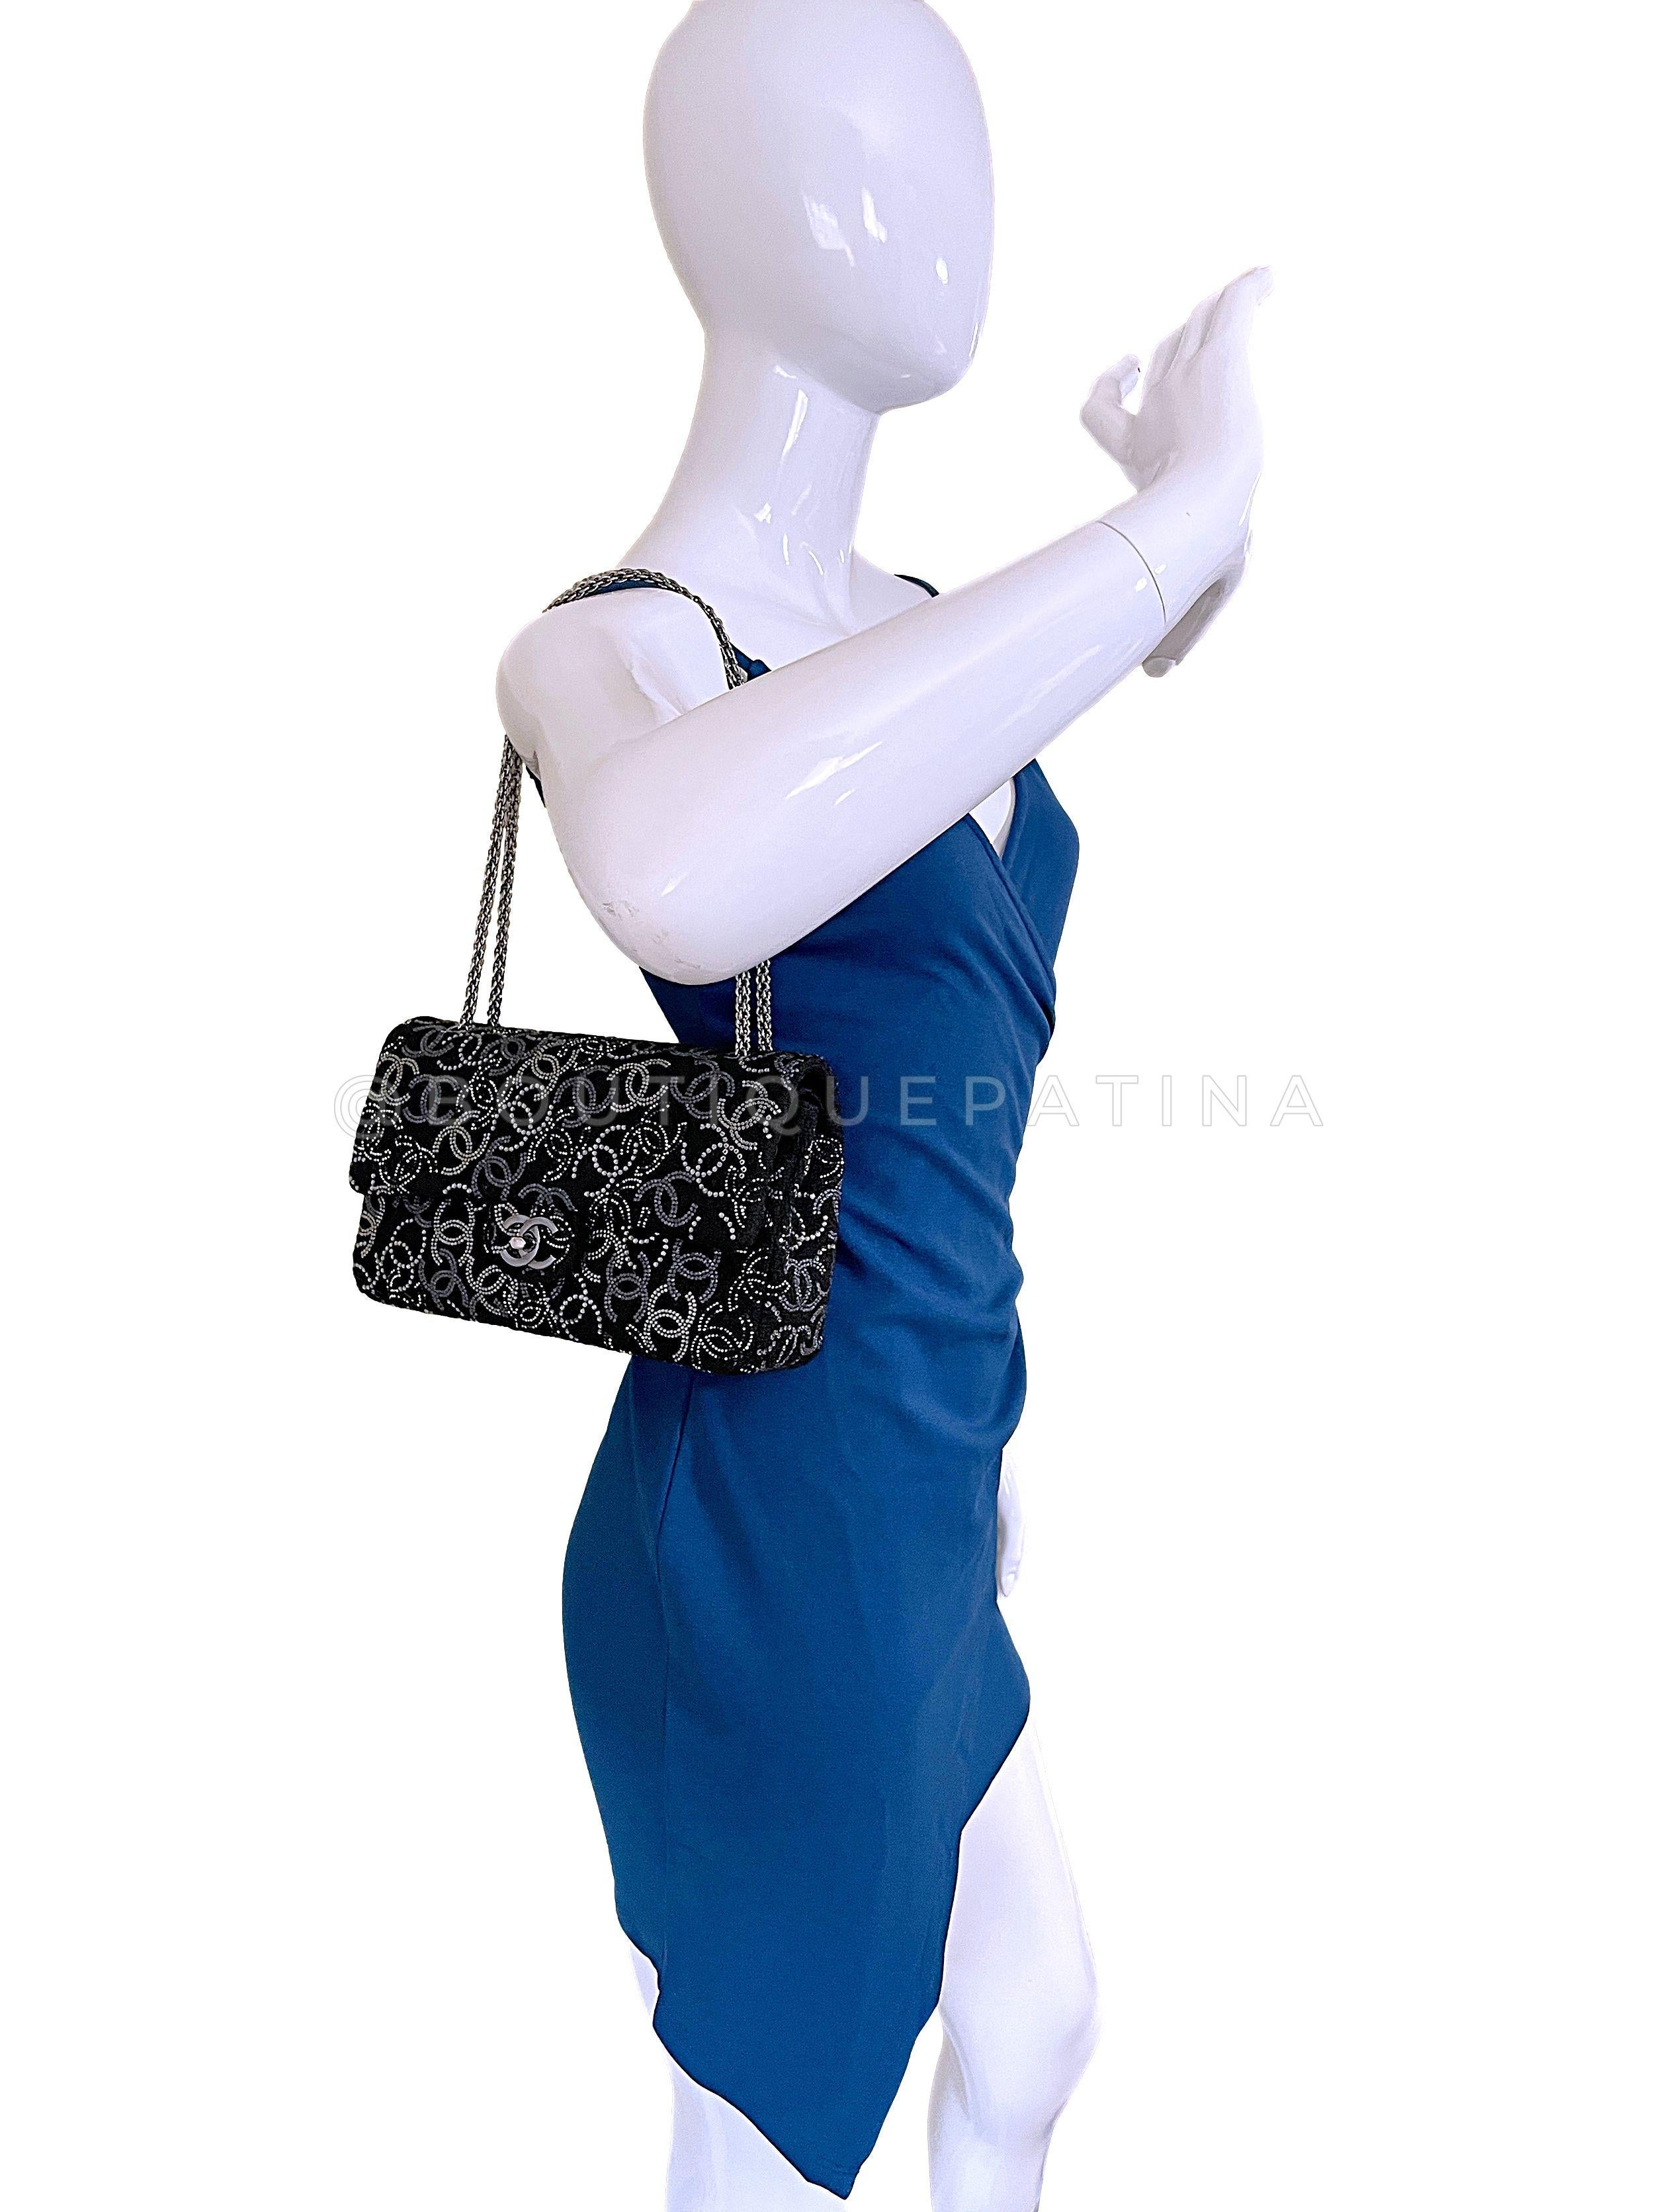 Chanel 2010 Black Paris-Shanghai Pudong Medium Classic Double Flap Bag 67299 For Sale 10